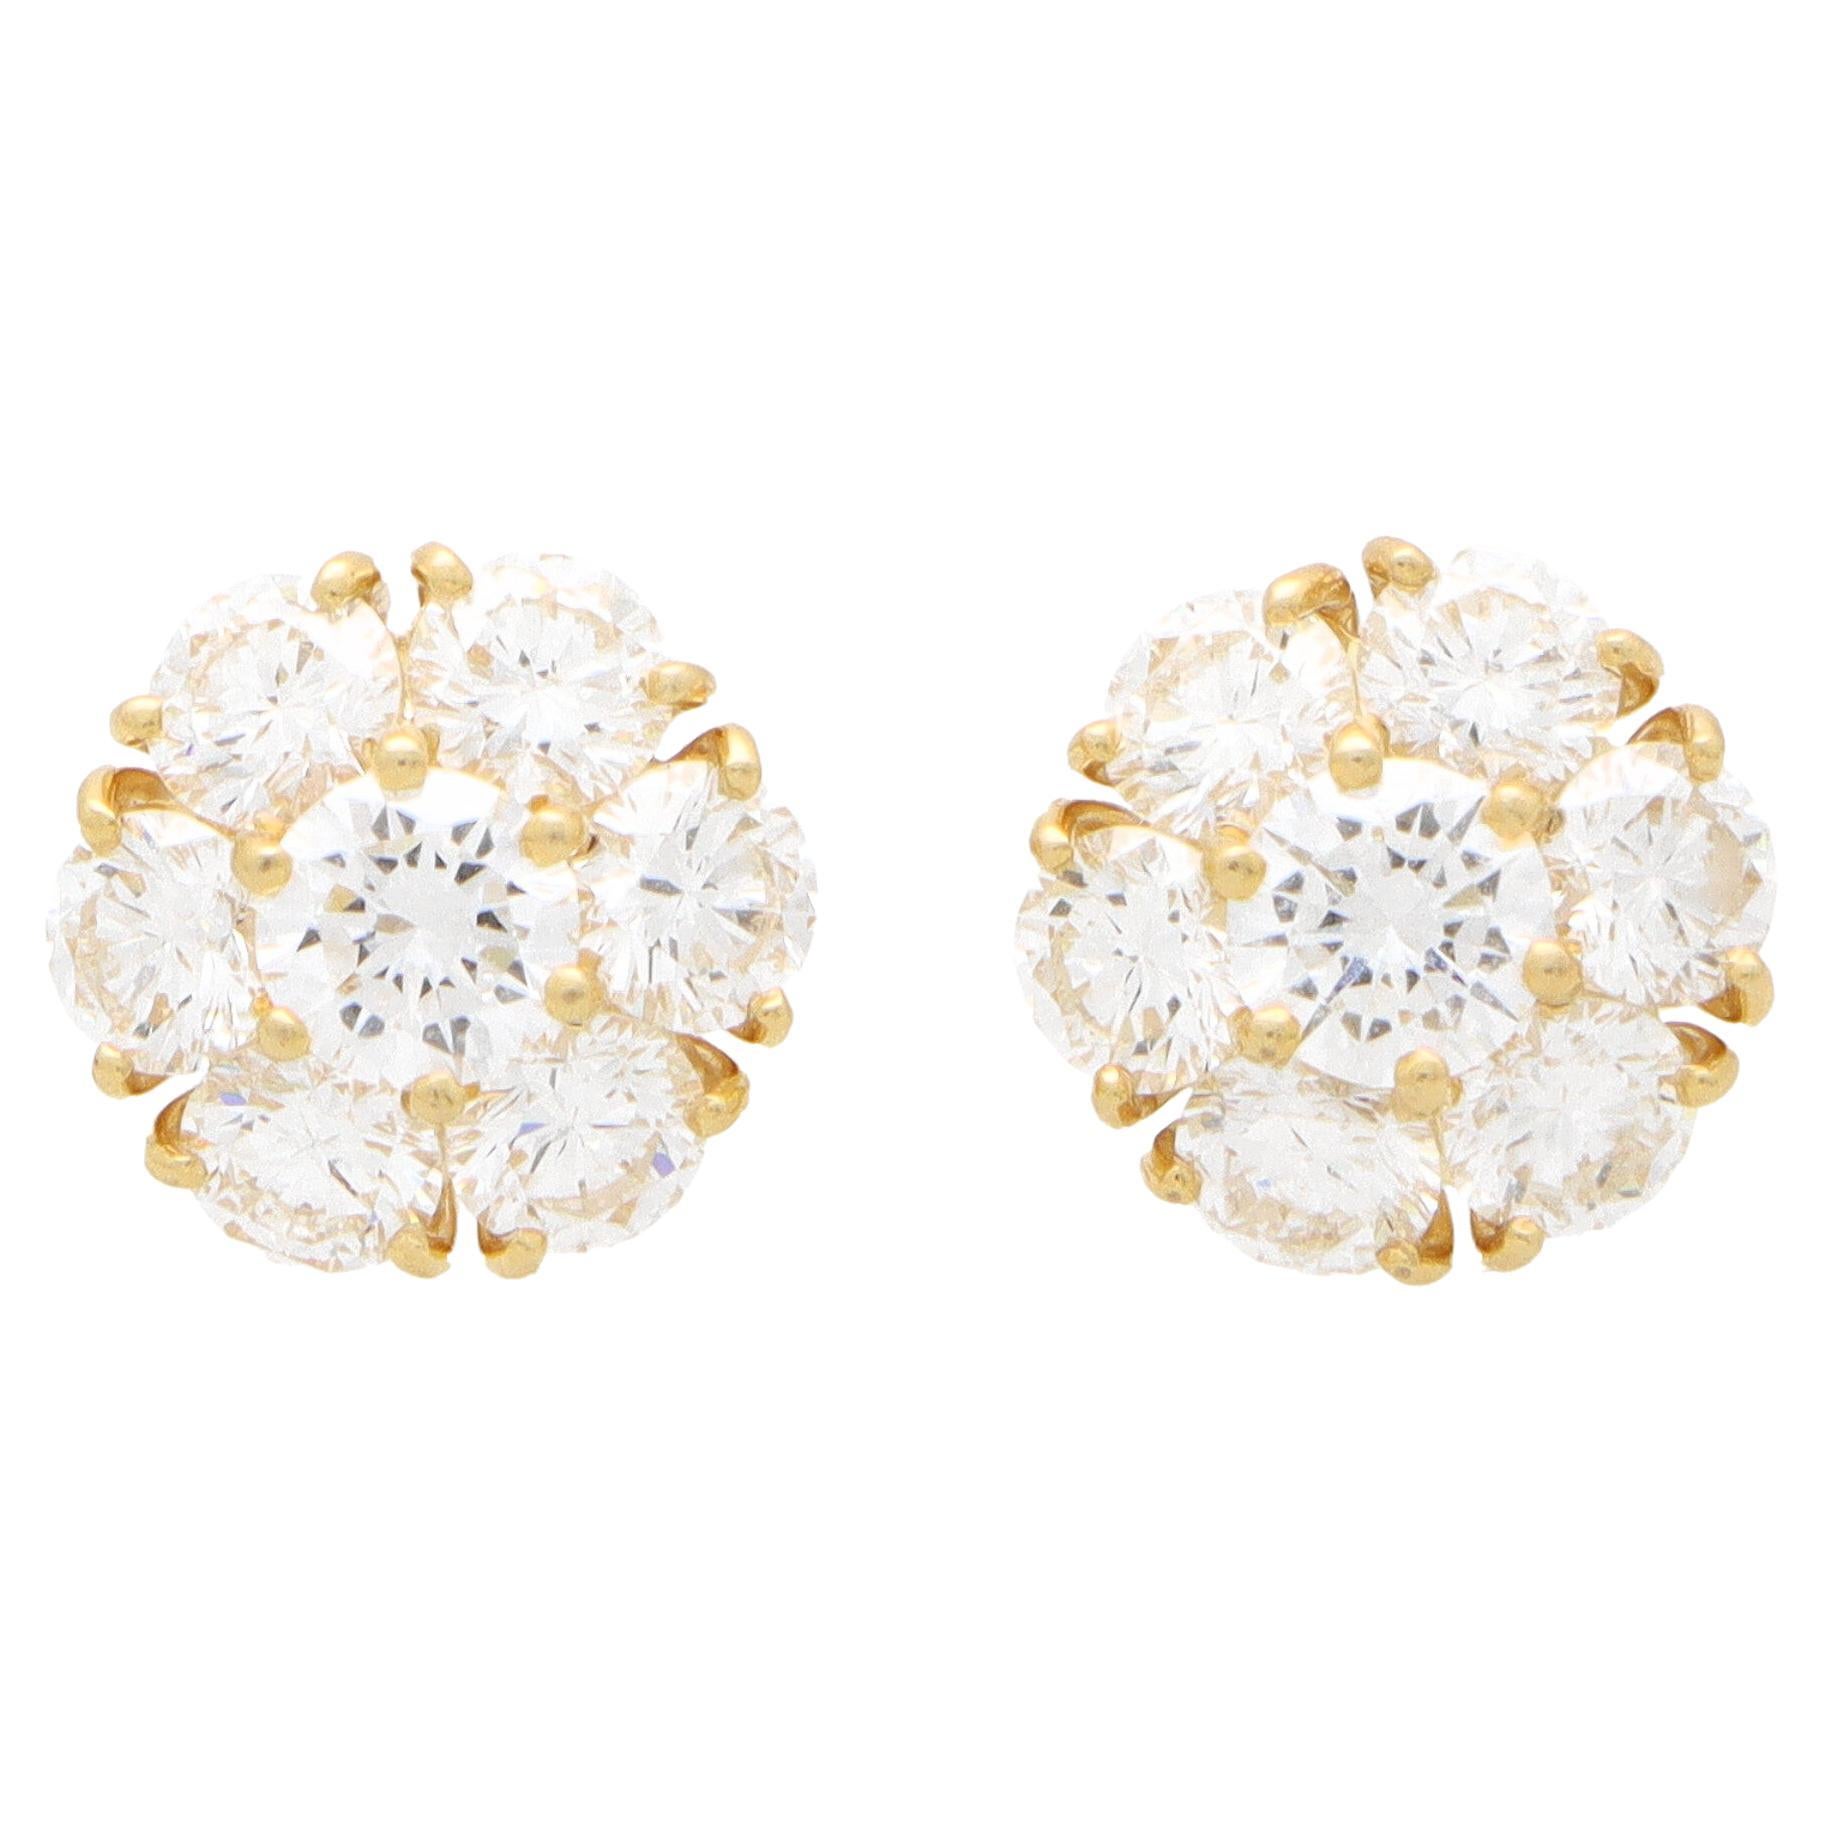 Vintage Van Cleef & Arpels Fleurette Diamond Cluster Stud Earrings in 18k Gold